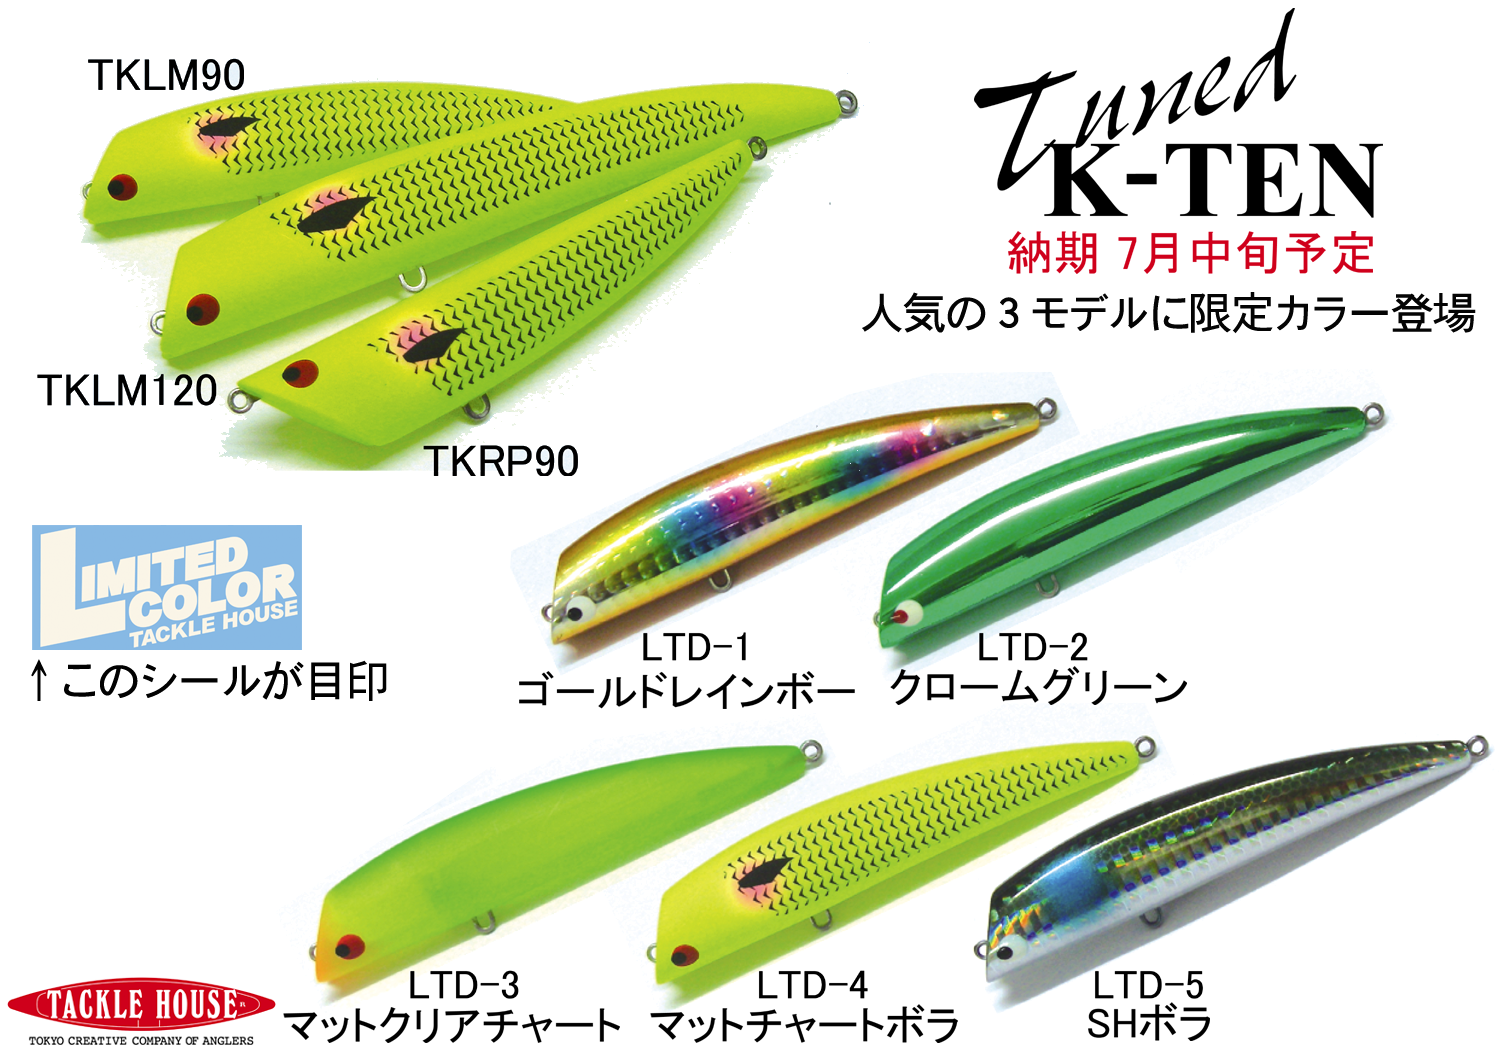 Tuned K-TEN 3モデル 久々の限定カラー発売！